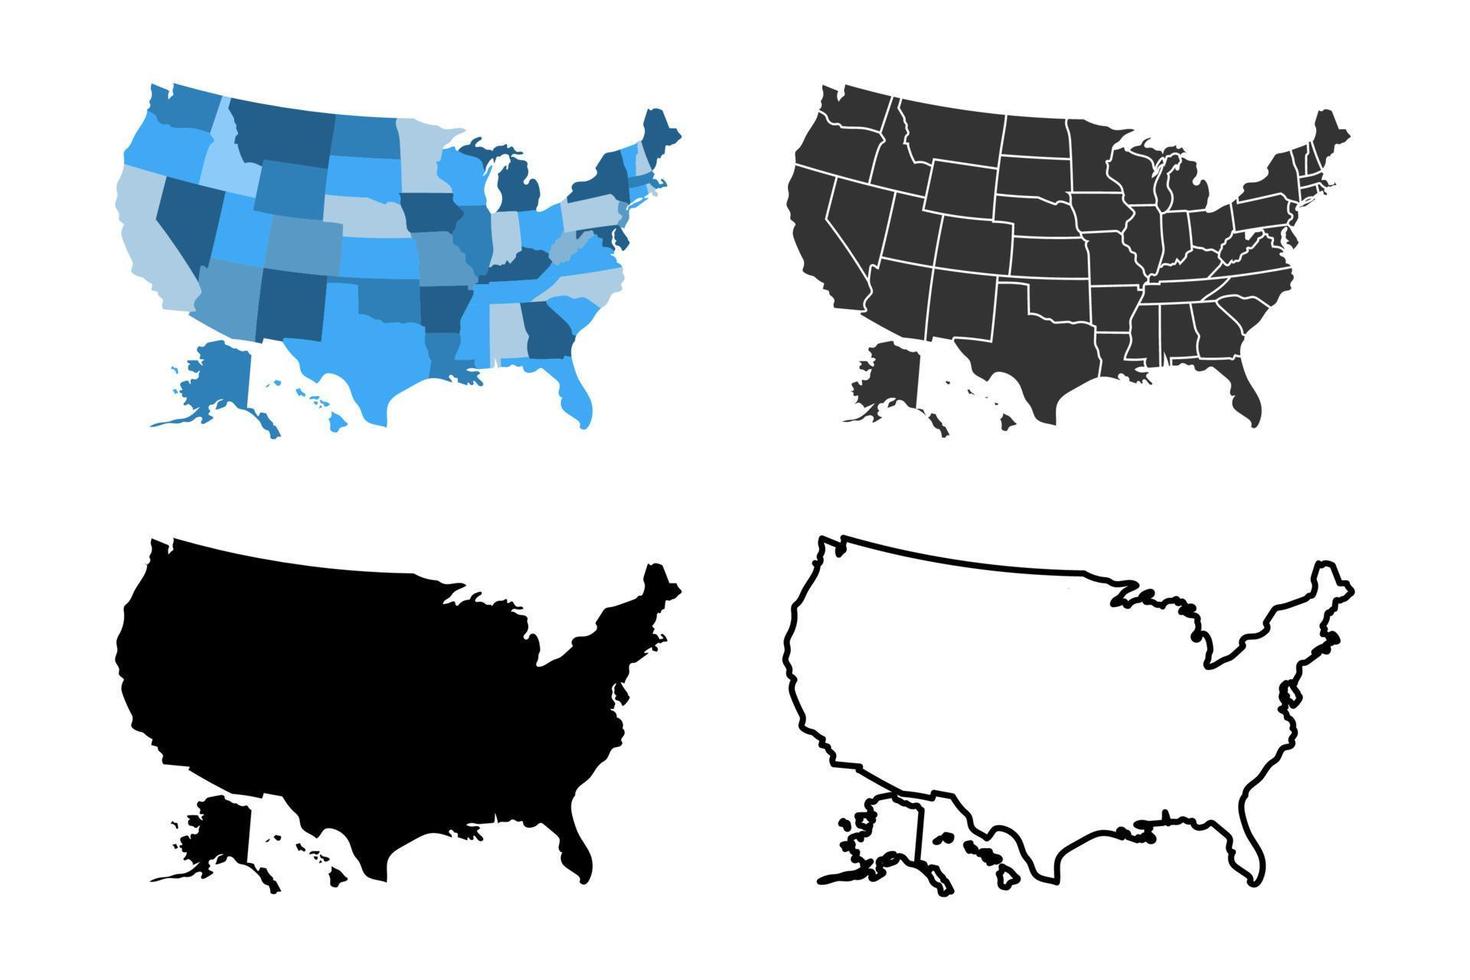 ensemble d'illustrations d'images vectorielles de carte des états-unis d'amérique. adapté à l'icône, au logo, à la bannière, à l'arrière-plan ou à tout contenu utilisant le thème de la carte américaine vecteur